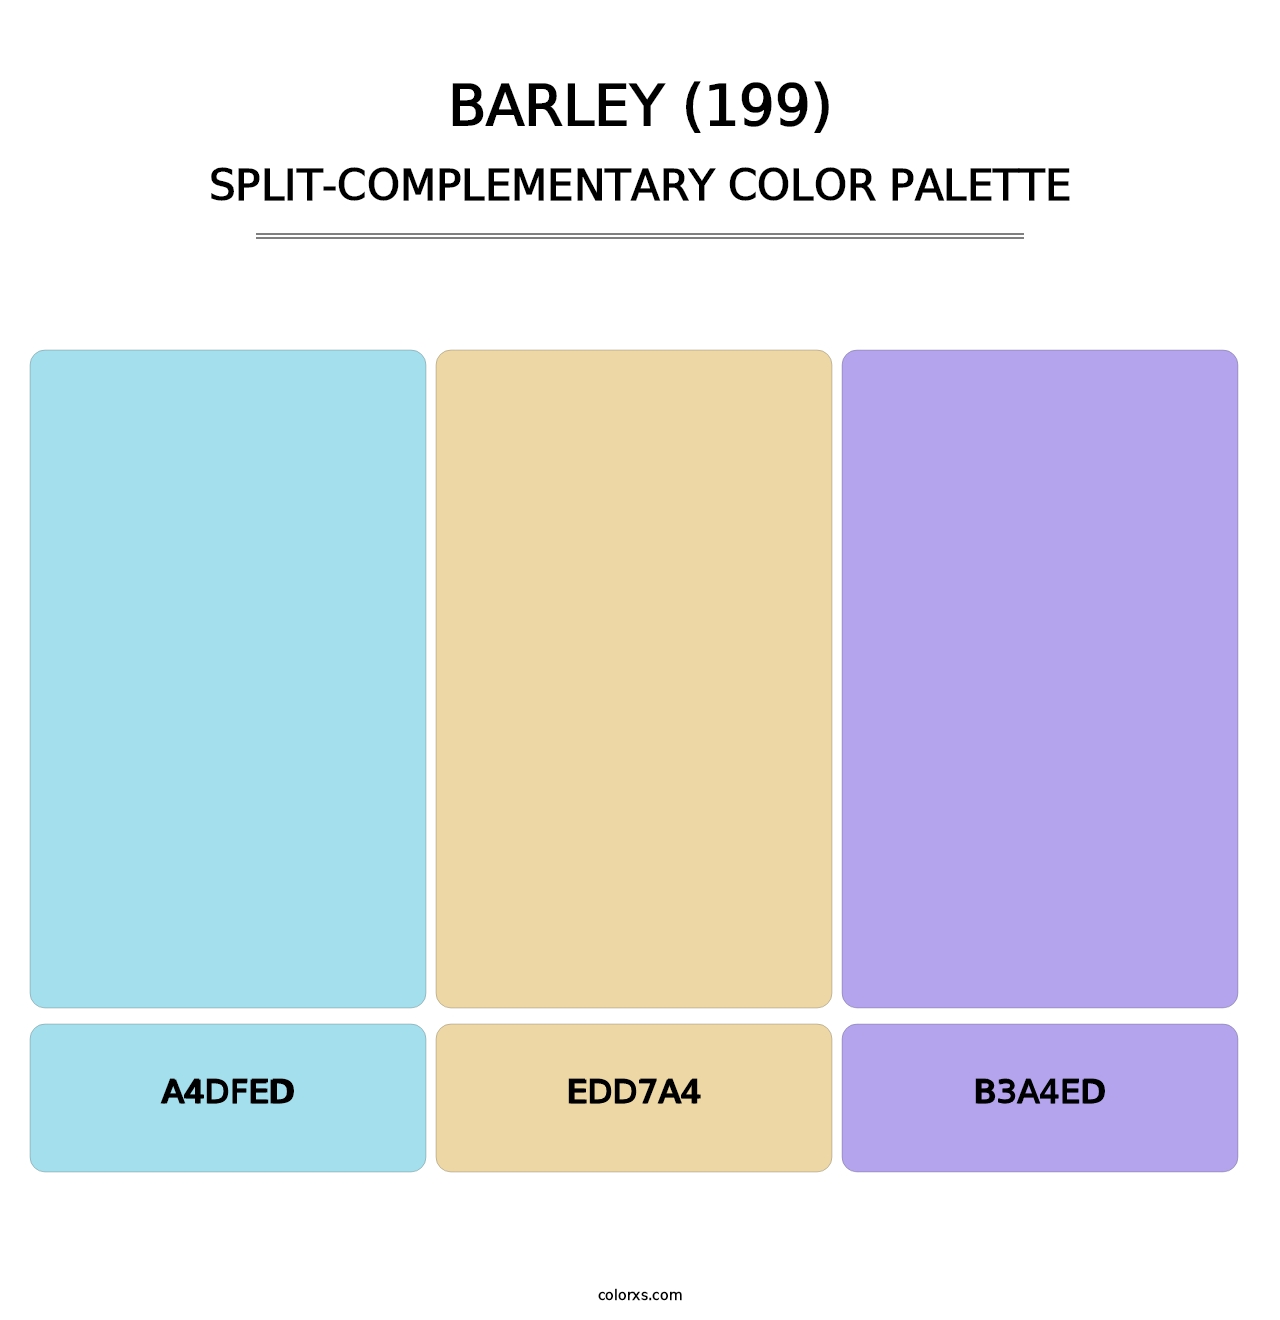 Barley (199) - Split-Complementary Color Palette